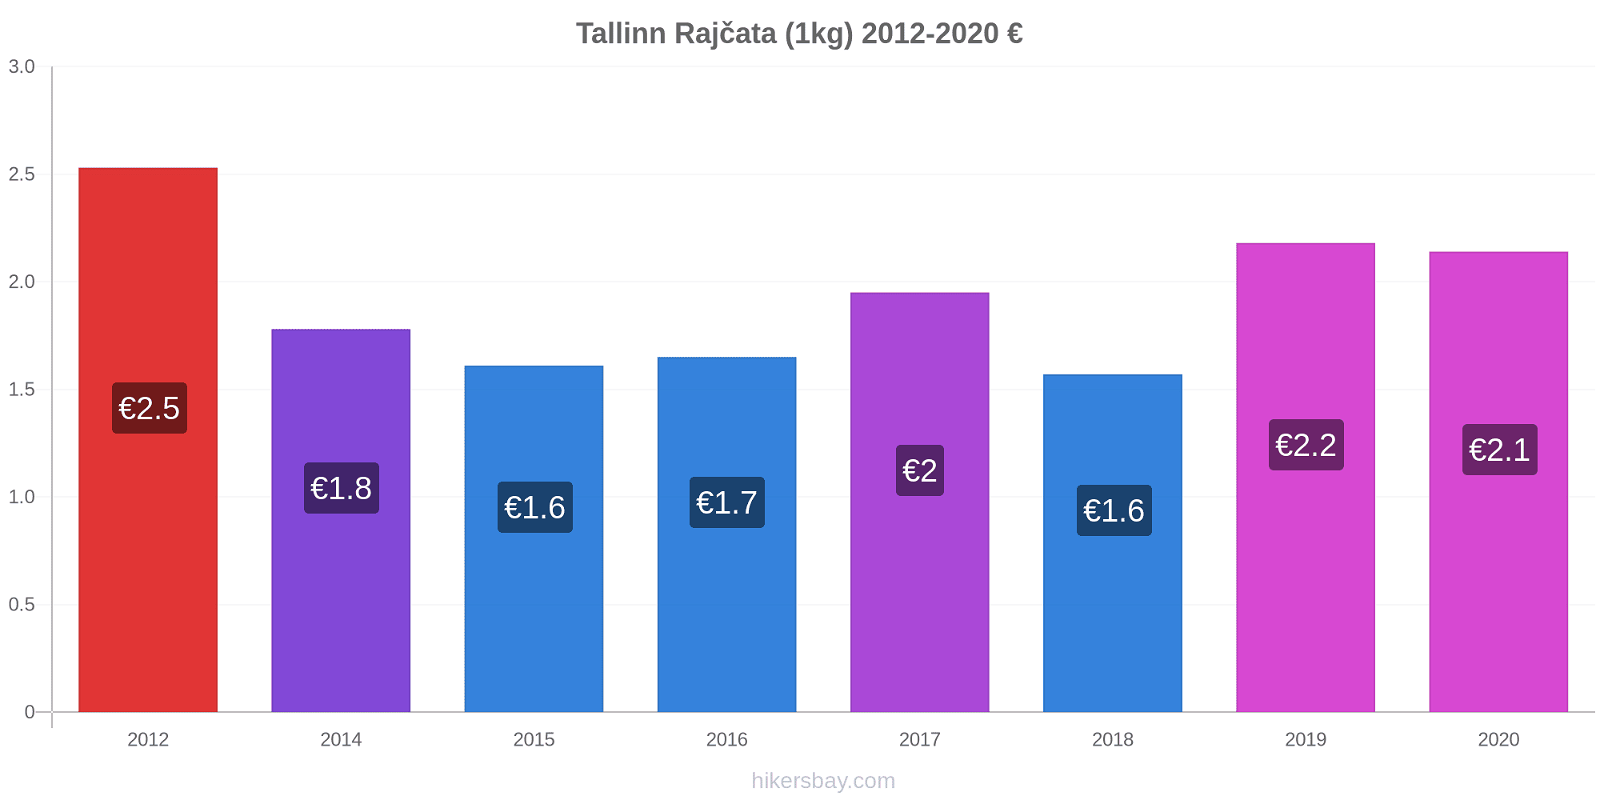 Tallinn změny cen Rajčata (1kg) hikersbay.com